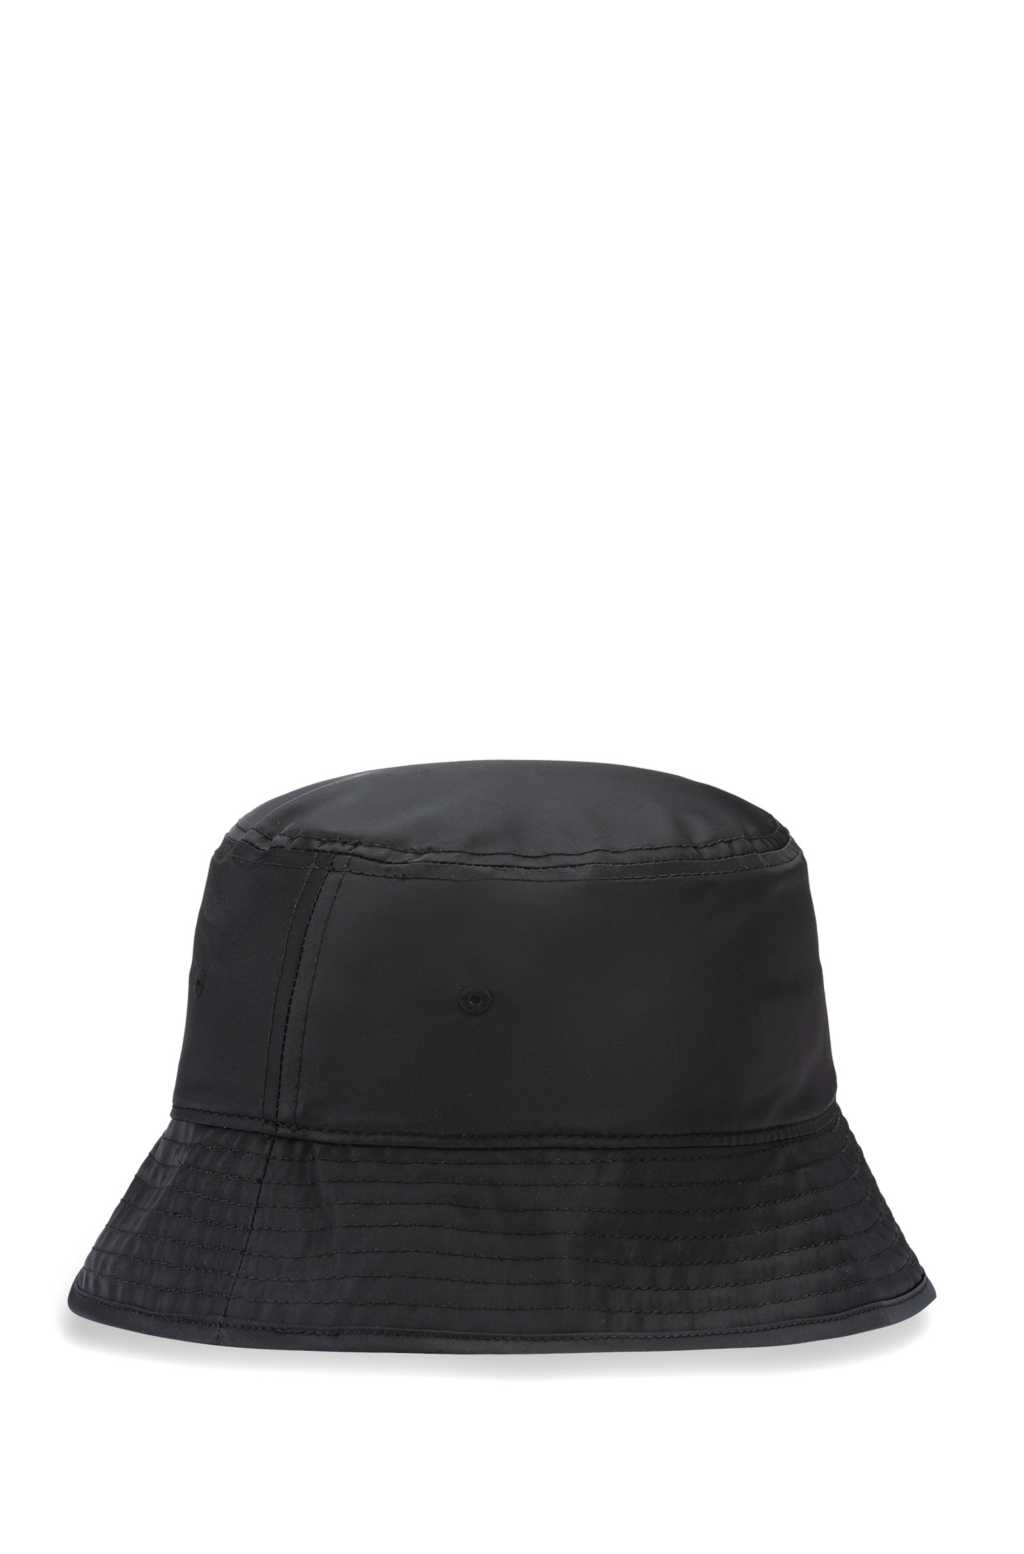 HUGO Logo Bucket Hat Black - MAISONDEFASHION.COM